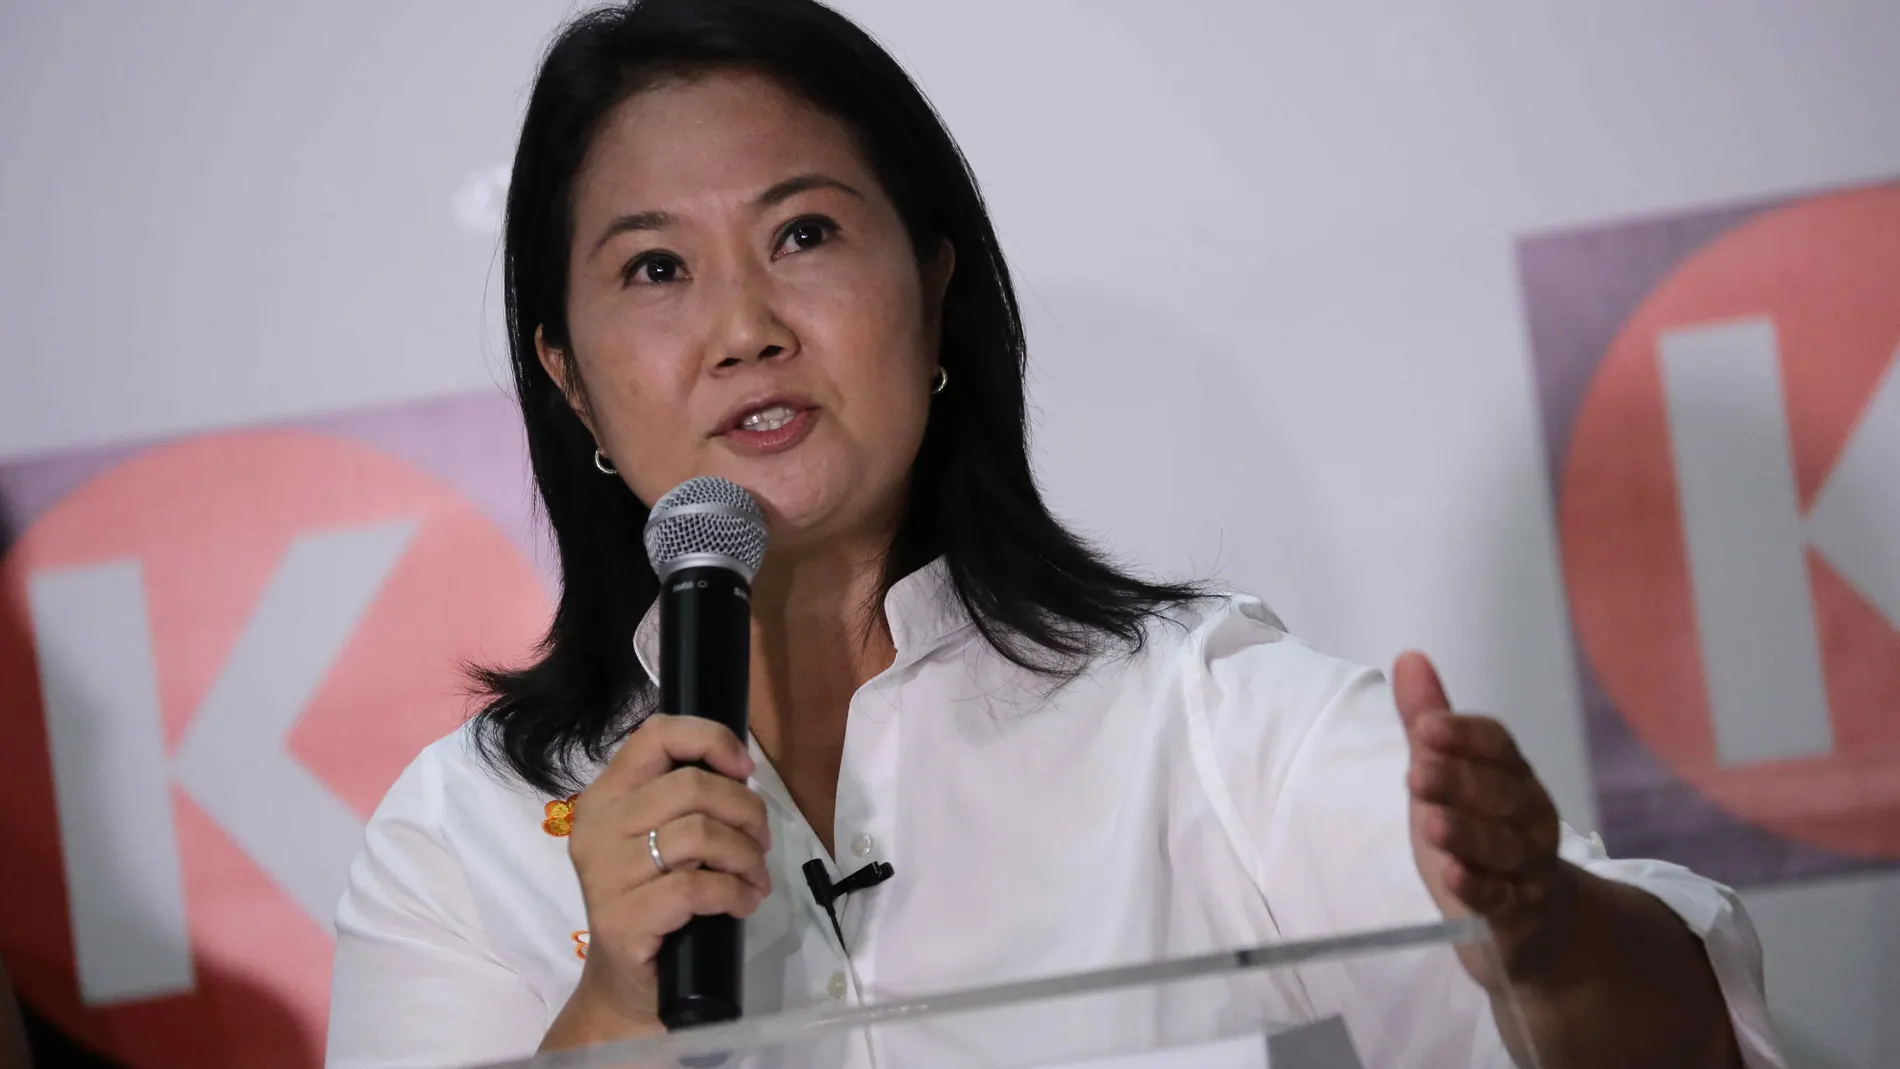 La candidata a la presidencia del Perú por el partido Fuerza Popular, Keiko Fujimori